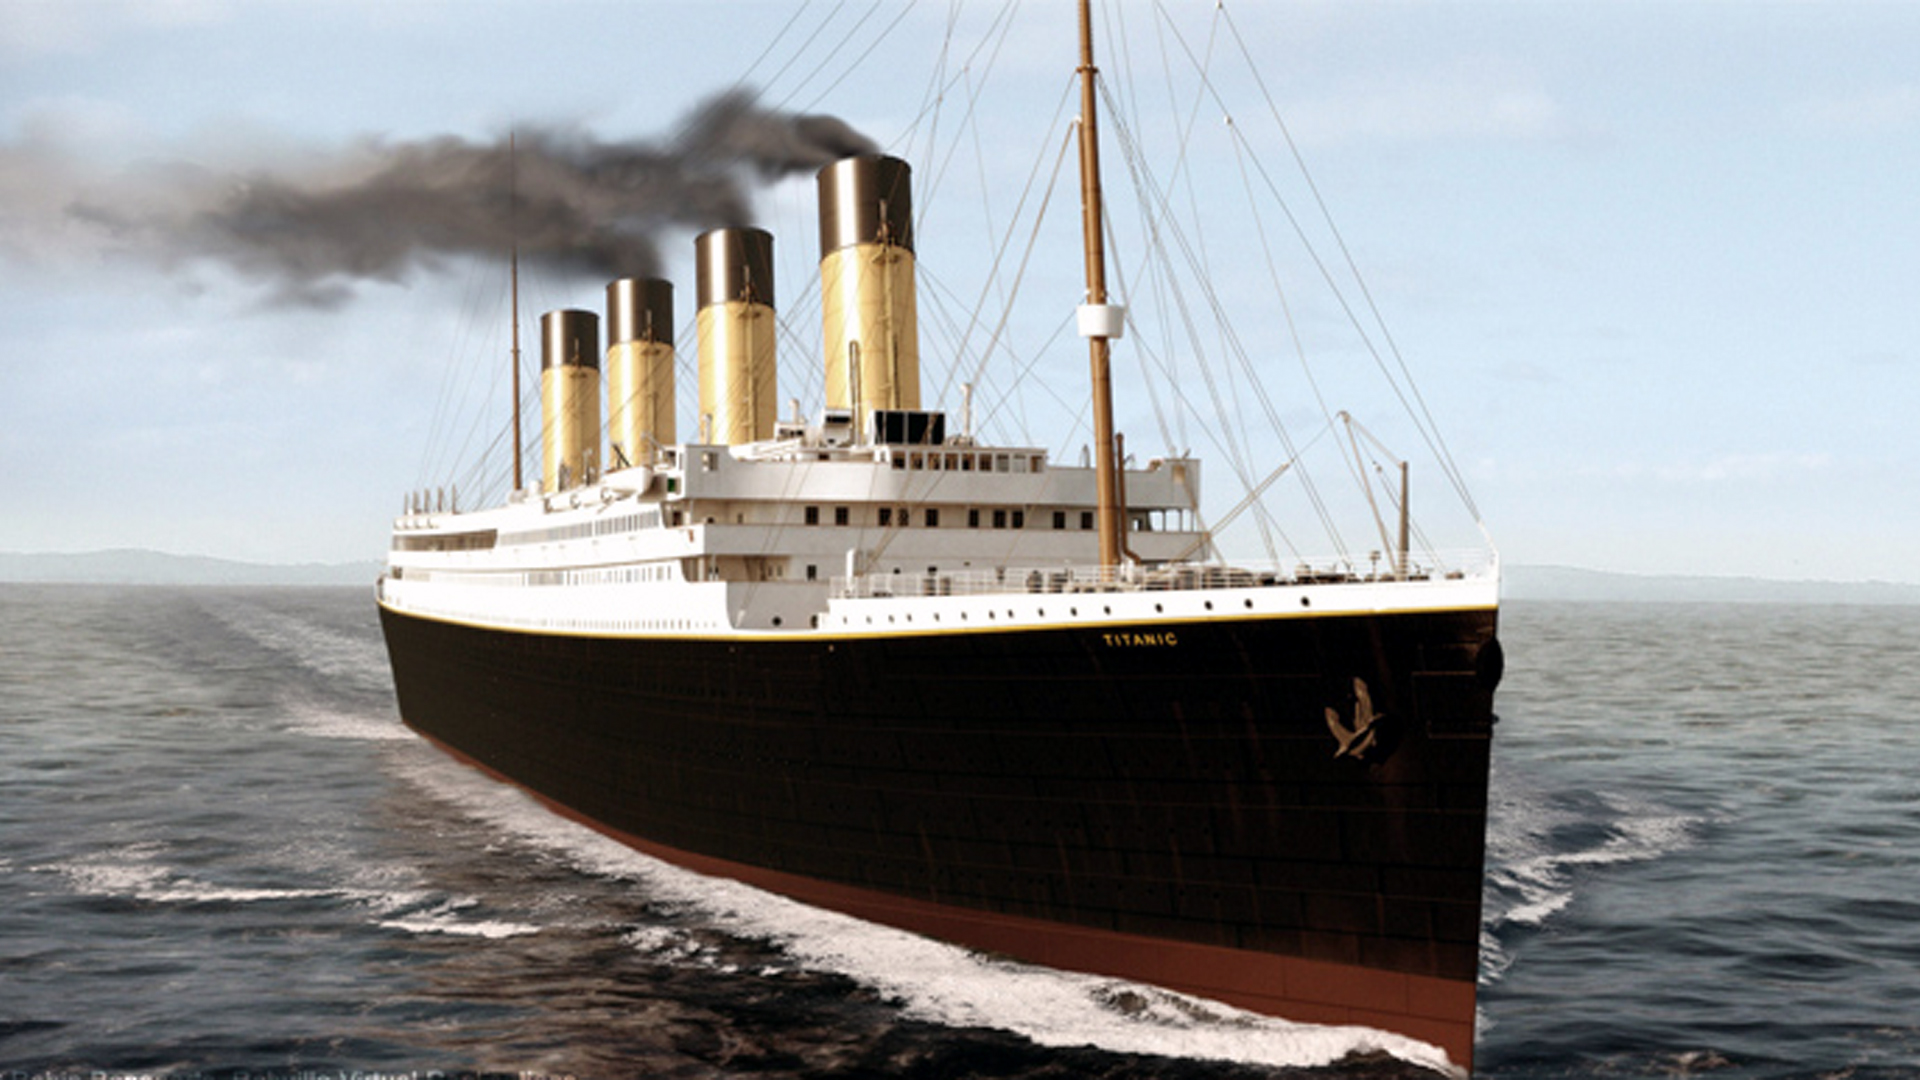 Mod Titanic do premiery Mafii 1 po 15 latach, pomijając część tragiczną